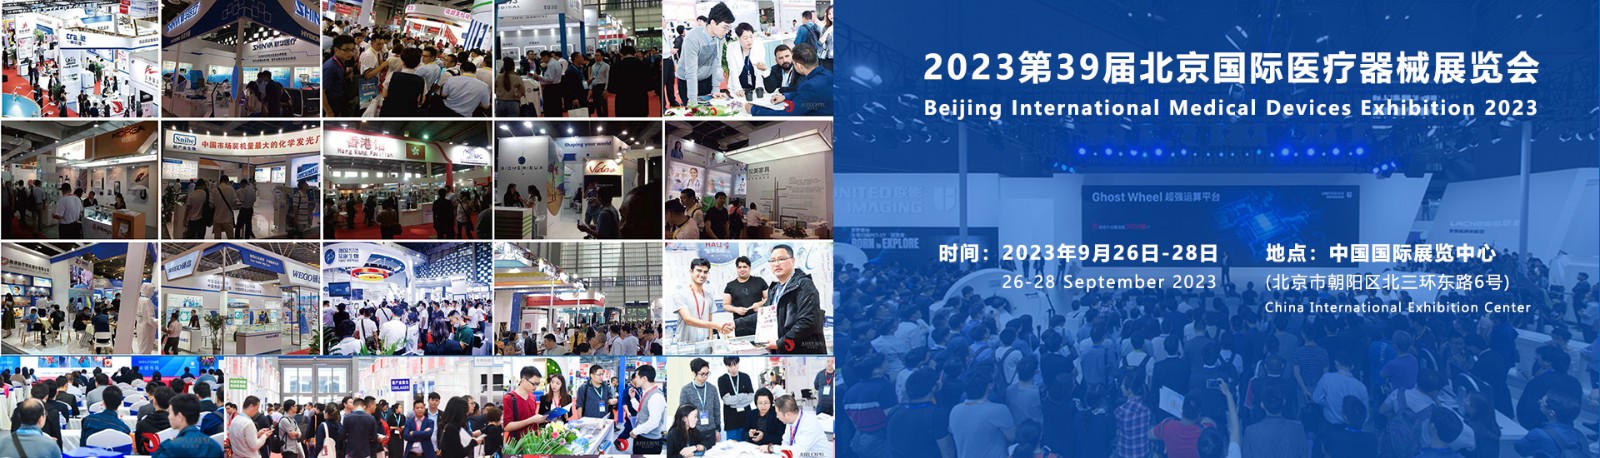 北京医疗展|医疗器械展览会|2023北京医疗器械展